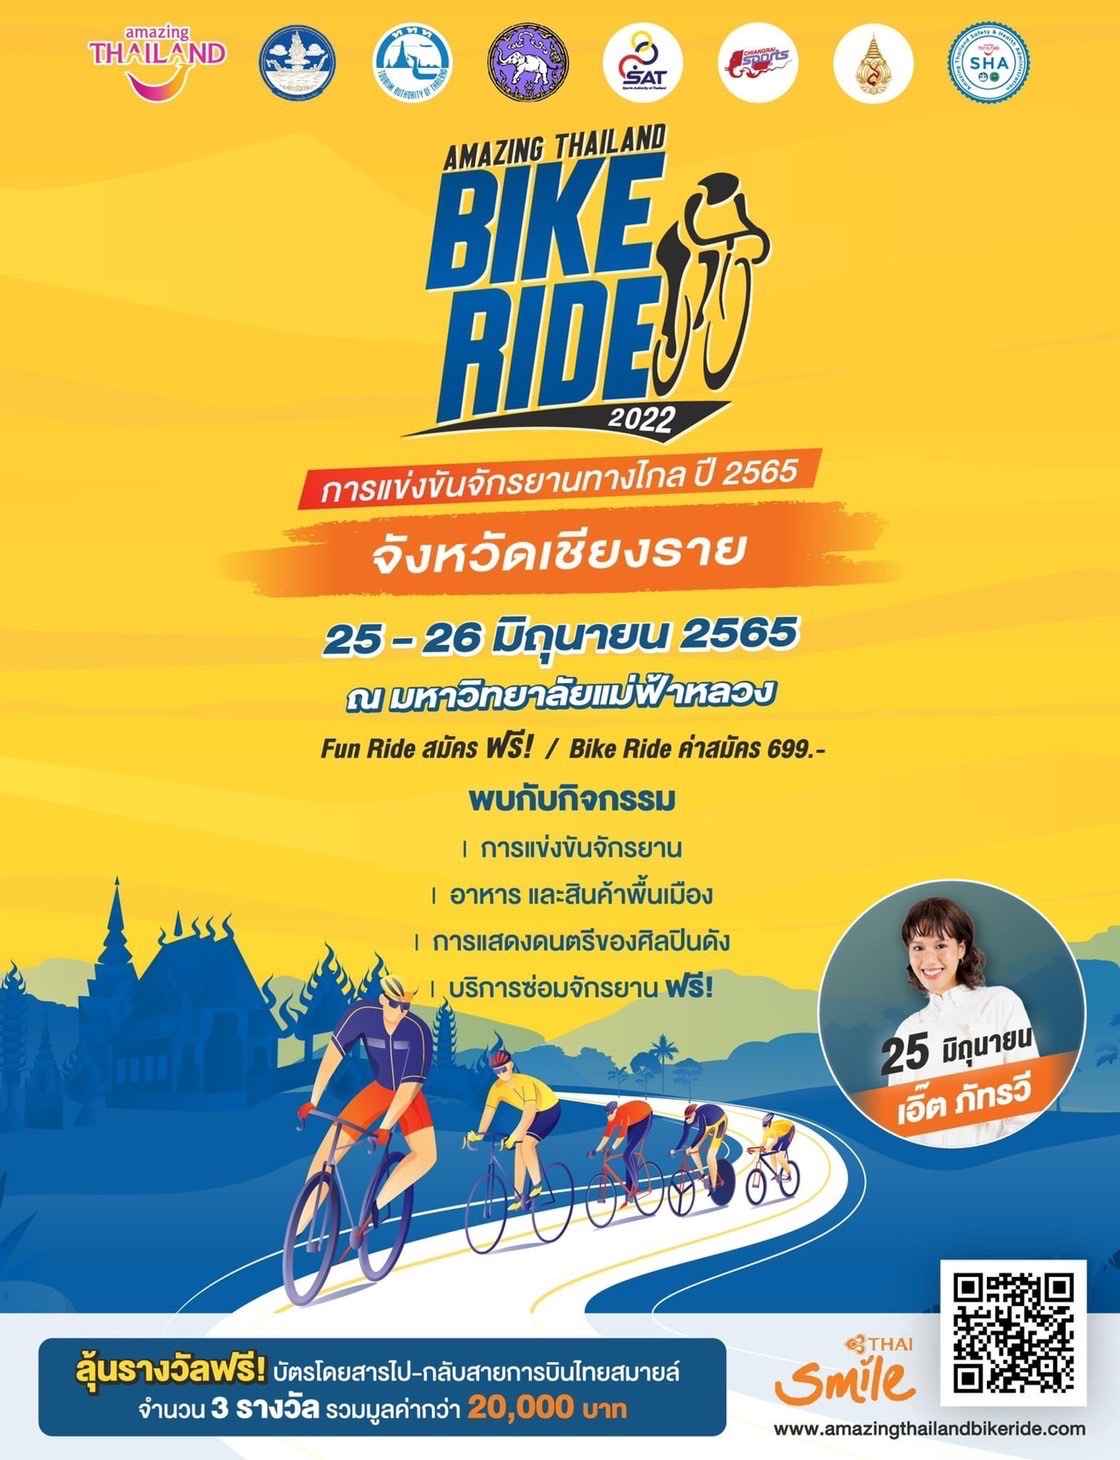 ททท. ชวนนักท่องเที่ยวสมัครเข้าร่วมปั่น พิชิตเส้นทางสวนพฤกษศาสตร์ จ.เชียงราย 25-26 มิ.ย 65 ในกิจกรรมการแข่งขันจักรยานทางไกล ปี 2565 (Amazing Thailand Bike Ride